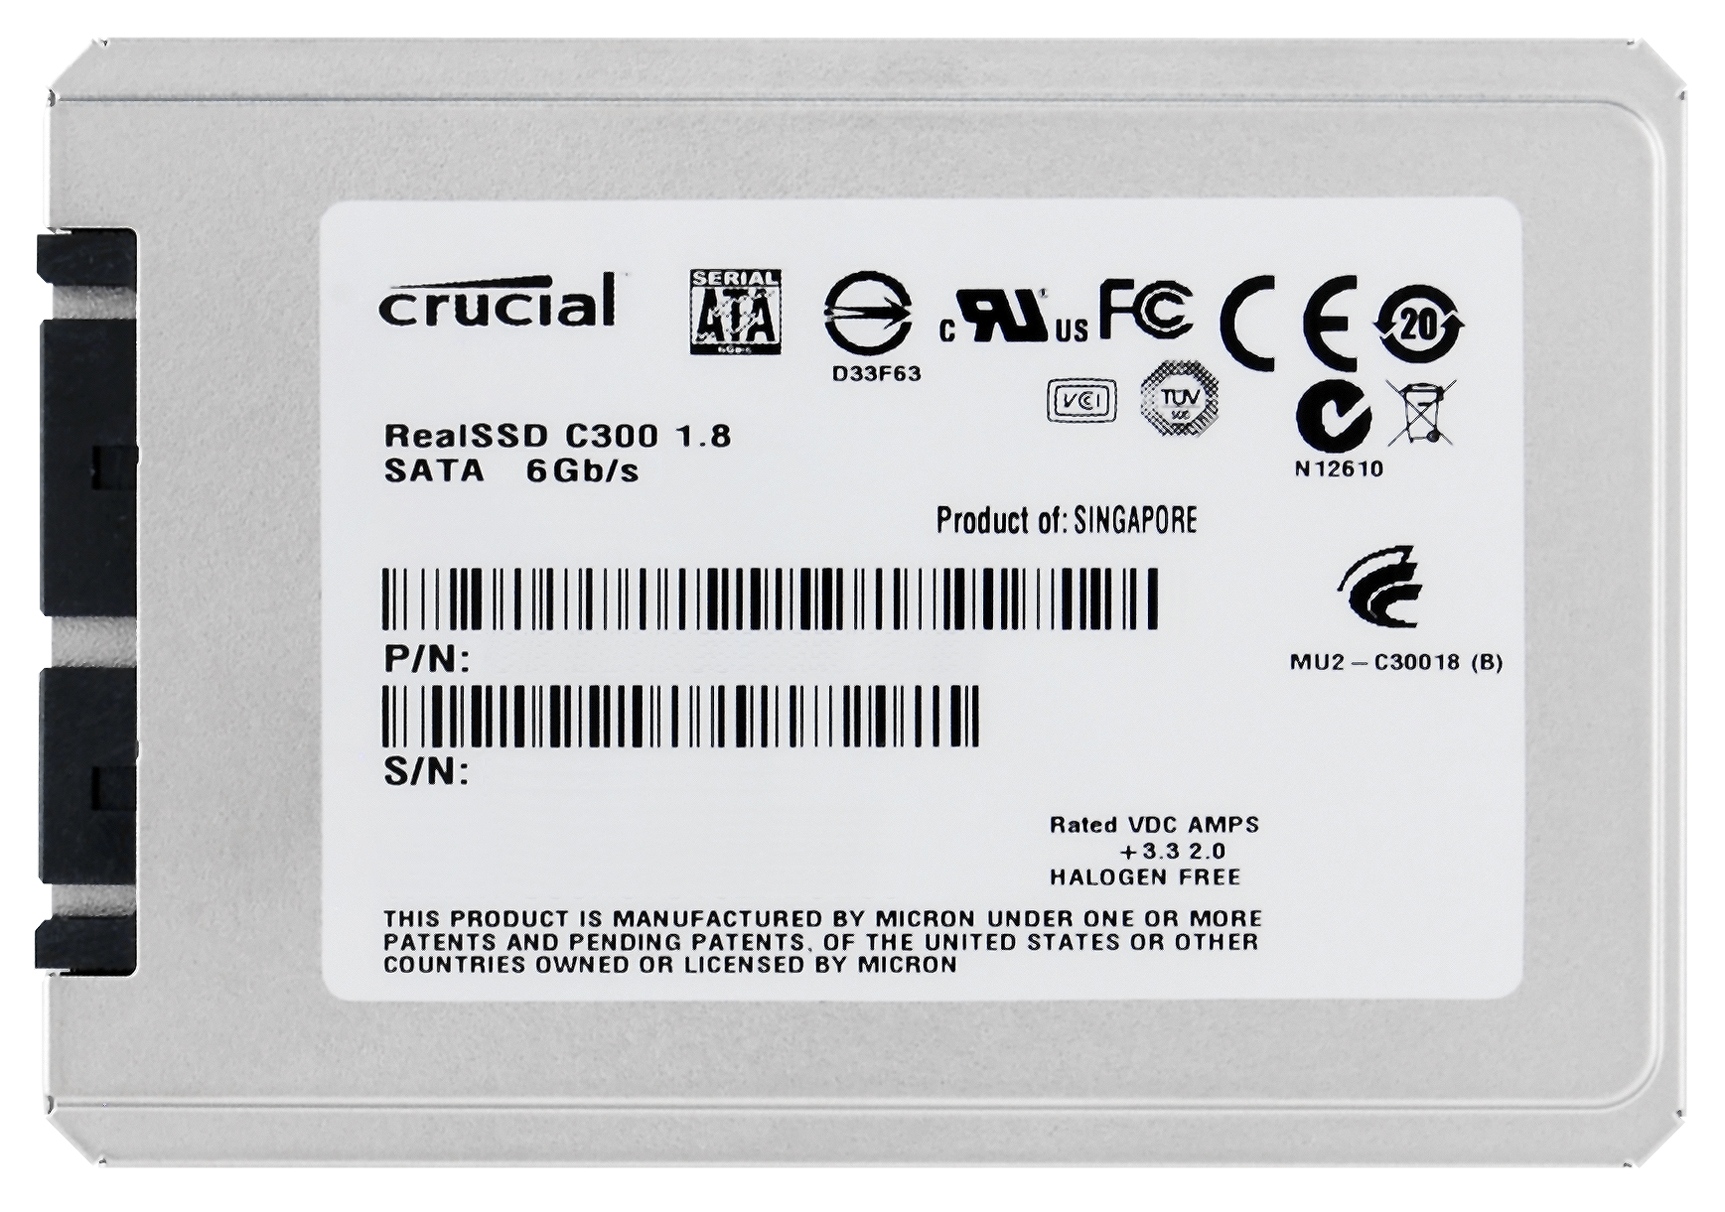 Immagine pubblicata in relazione al seguente contenuto: Lexar Media lancia gli SSD Crucial RealSSD C300 da 1.8-inch | Nome immagine: news13976_1.jpg